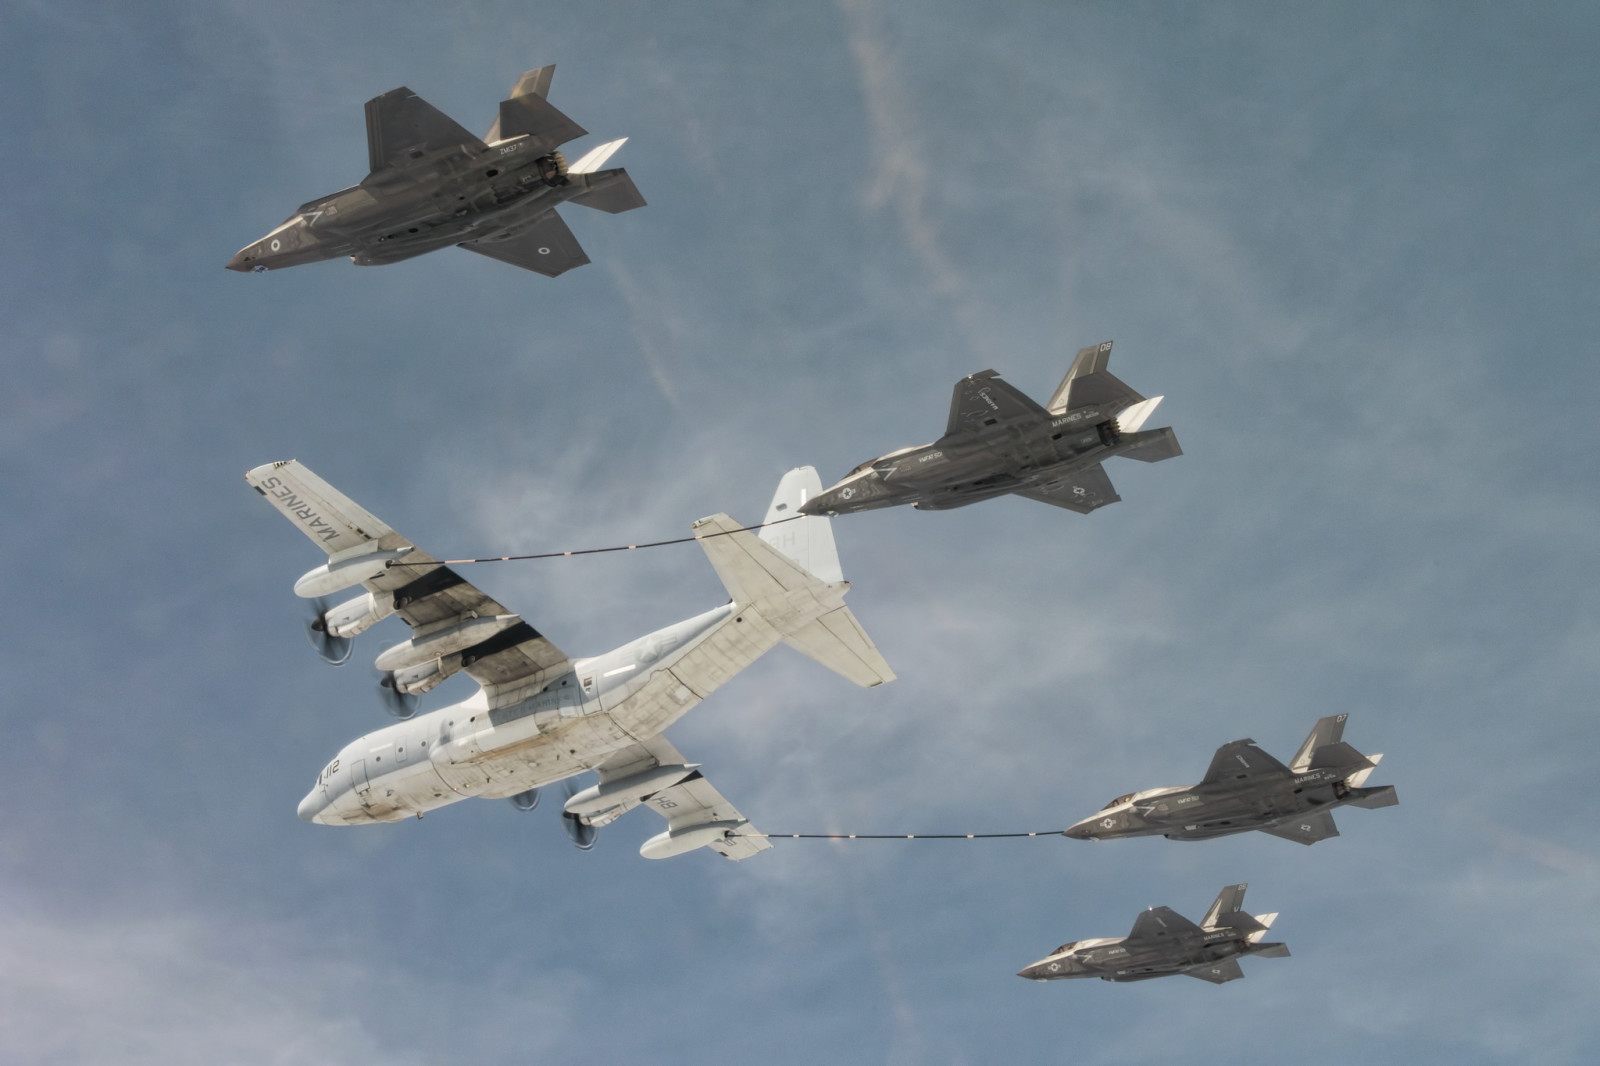 ท้องฟ้า, เครื่องบิน, นักมวย, เครื่องบินทิ้งระเบิด, การขนส่งทางทหาร, เติมน้ำมัน, F-35B, Super Hercules